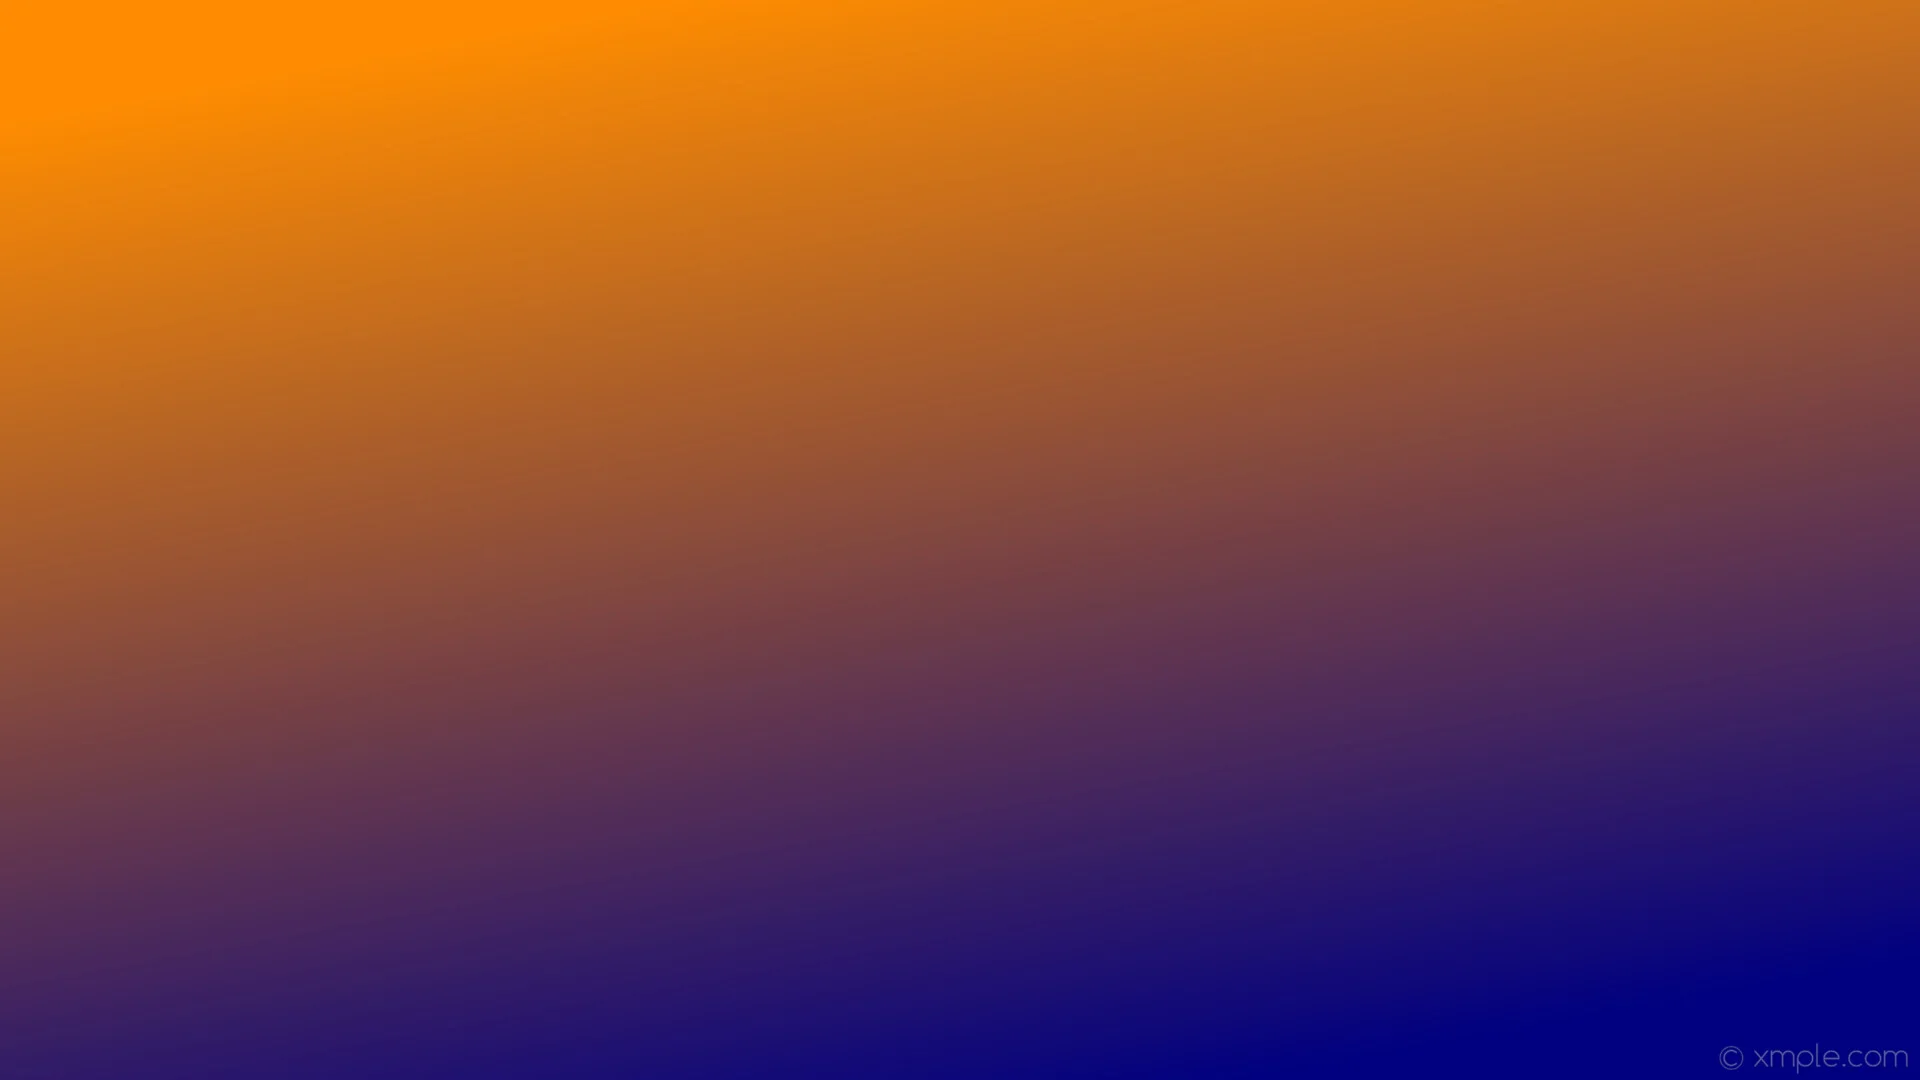 Wallpaper gradient blue orange linear navy dark orange #ff8c00 300